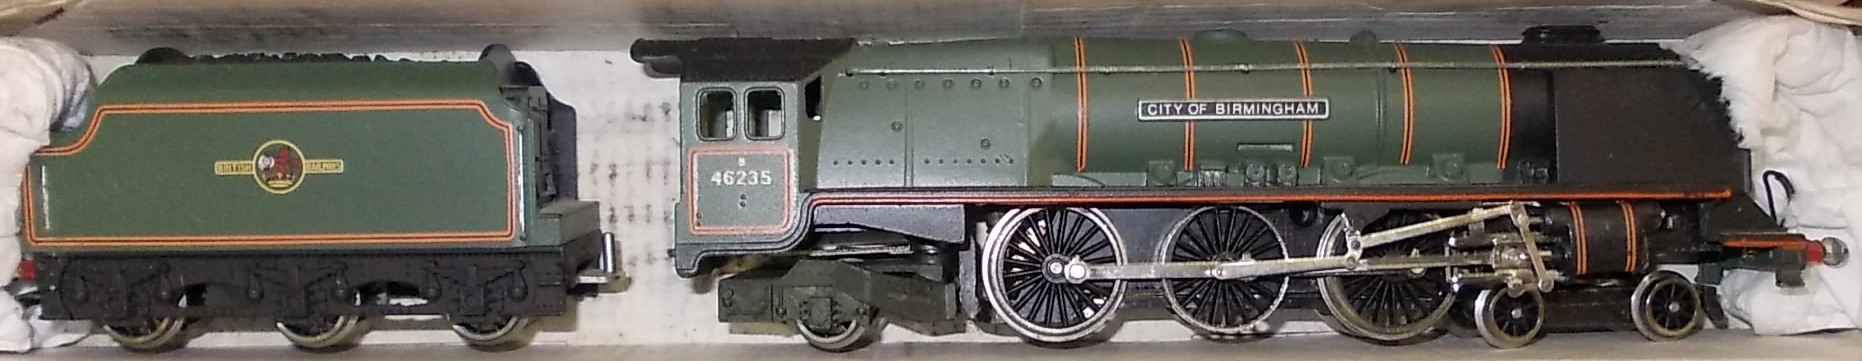 Wrenn. W2227 4-6-2 loco & tender. 46235 'City of Birmingham', green, B.R. Boxed.